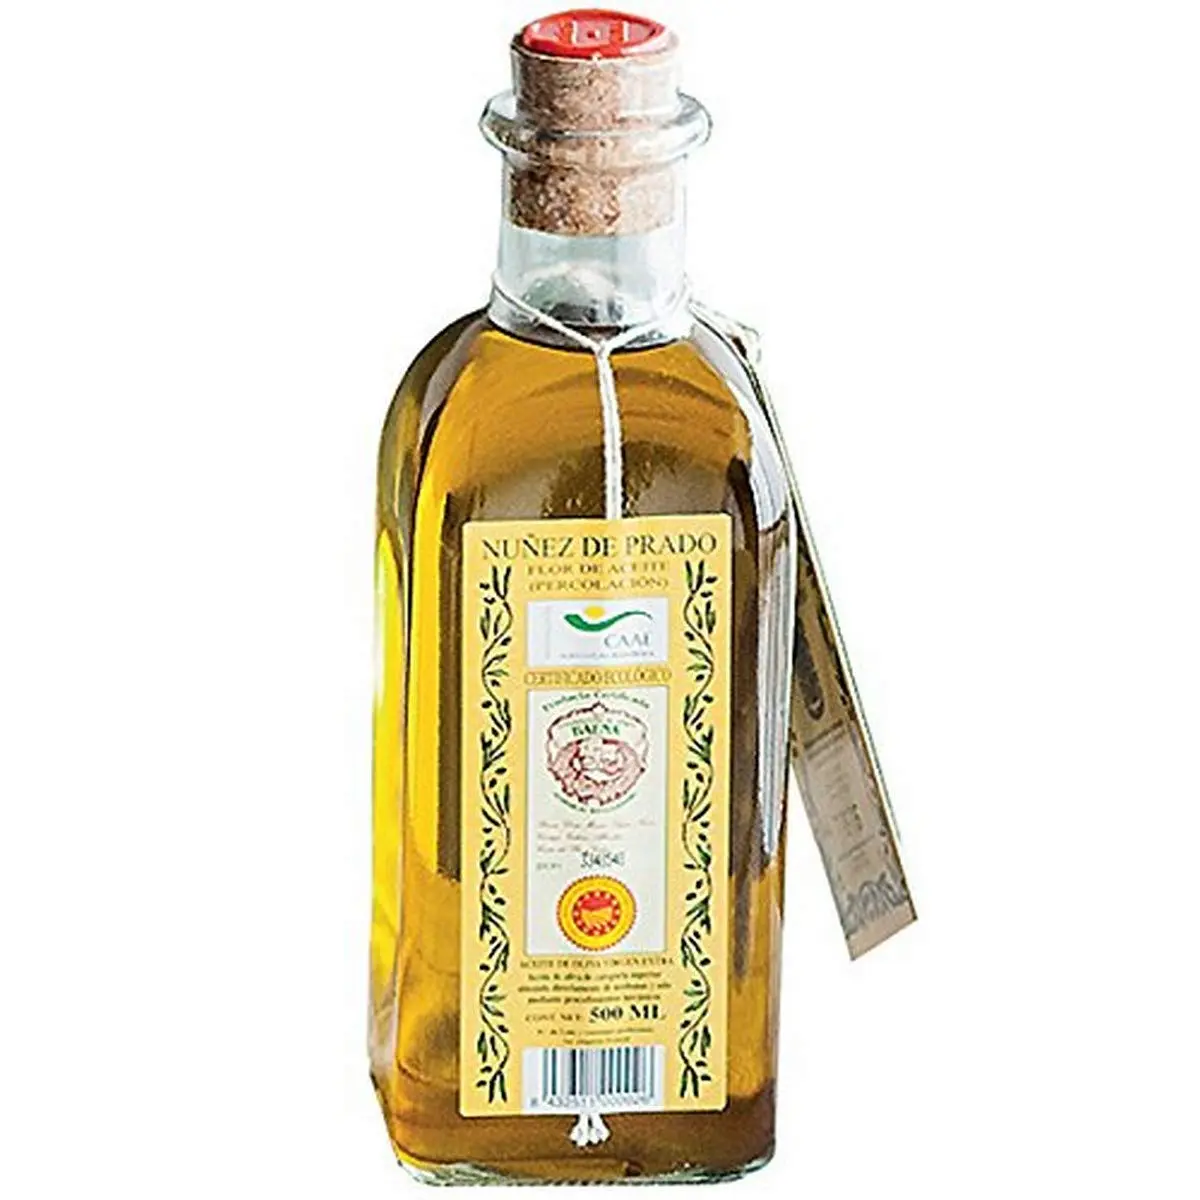 Comprar aceite nuñez de prado: experiencia gourmet única